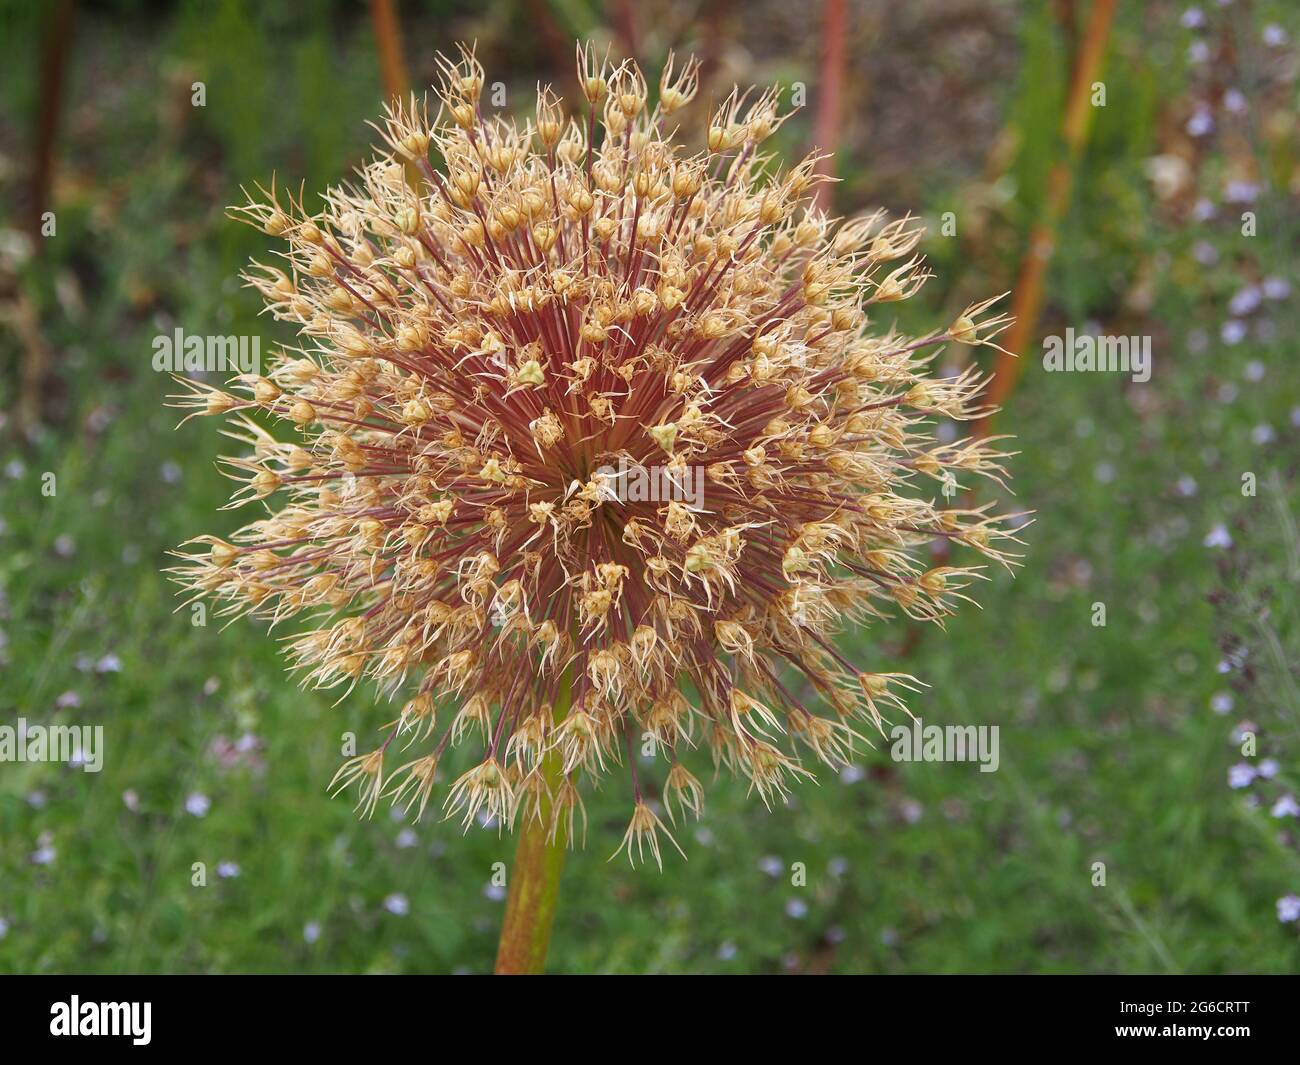 Makroaufnahme des Saatkopfes des riesigen Allium (Allium giganteum) Var. Allium Beau betrachtet das Wachstum in einem englischen Garten im Juli. Stockfoto